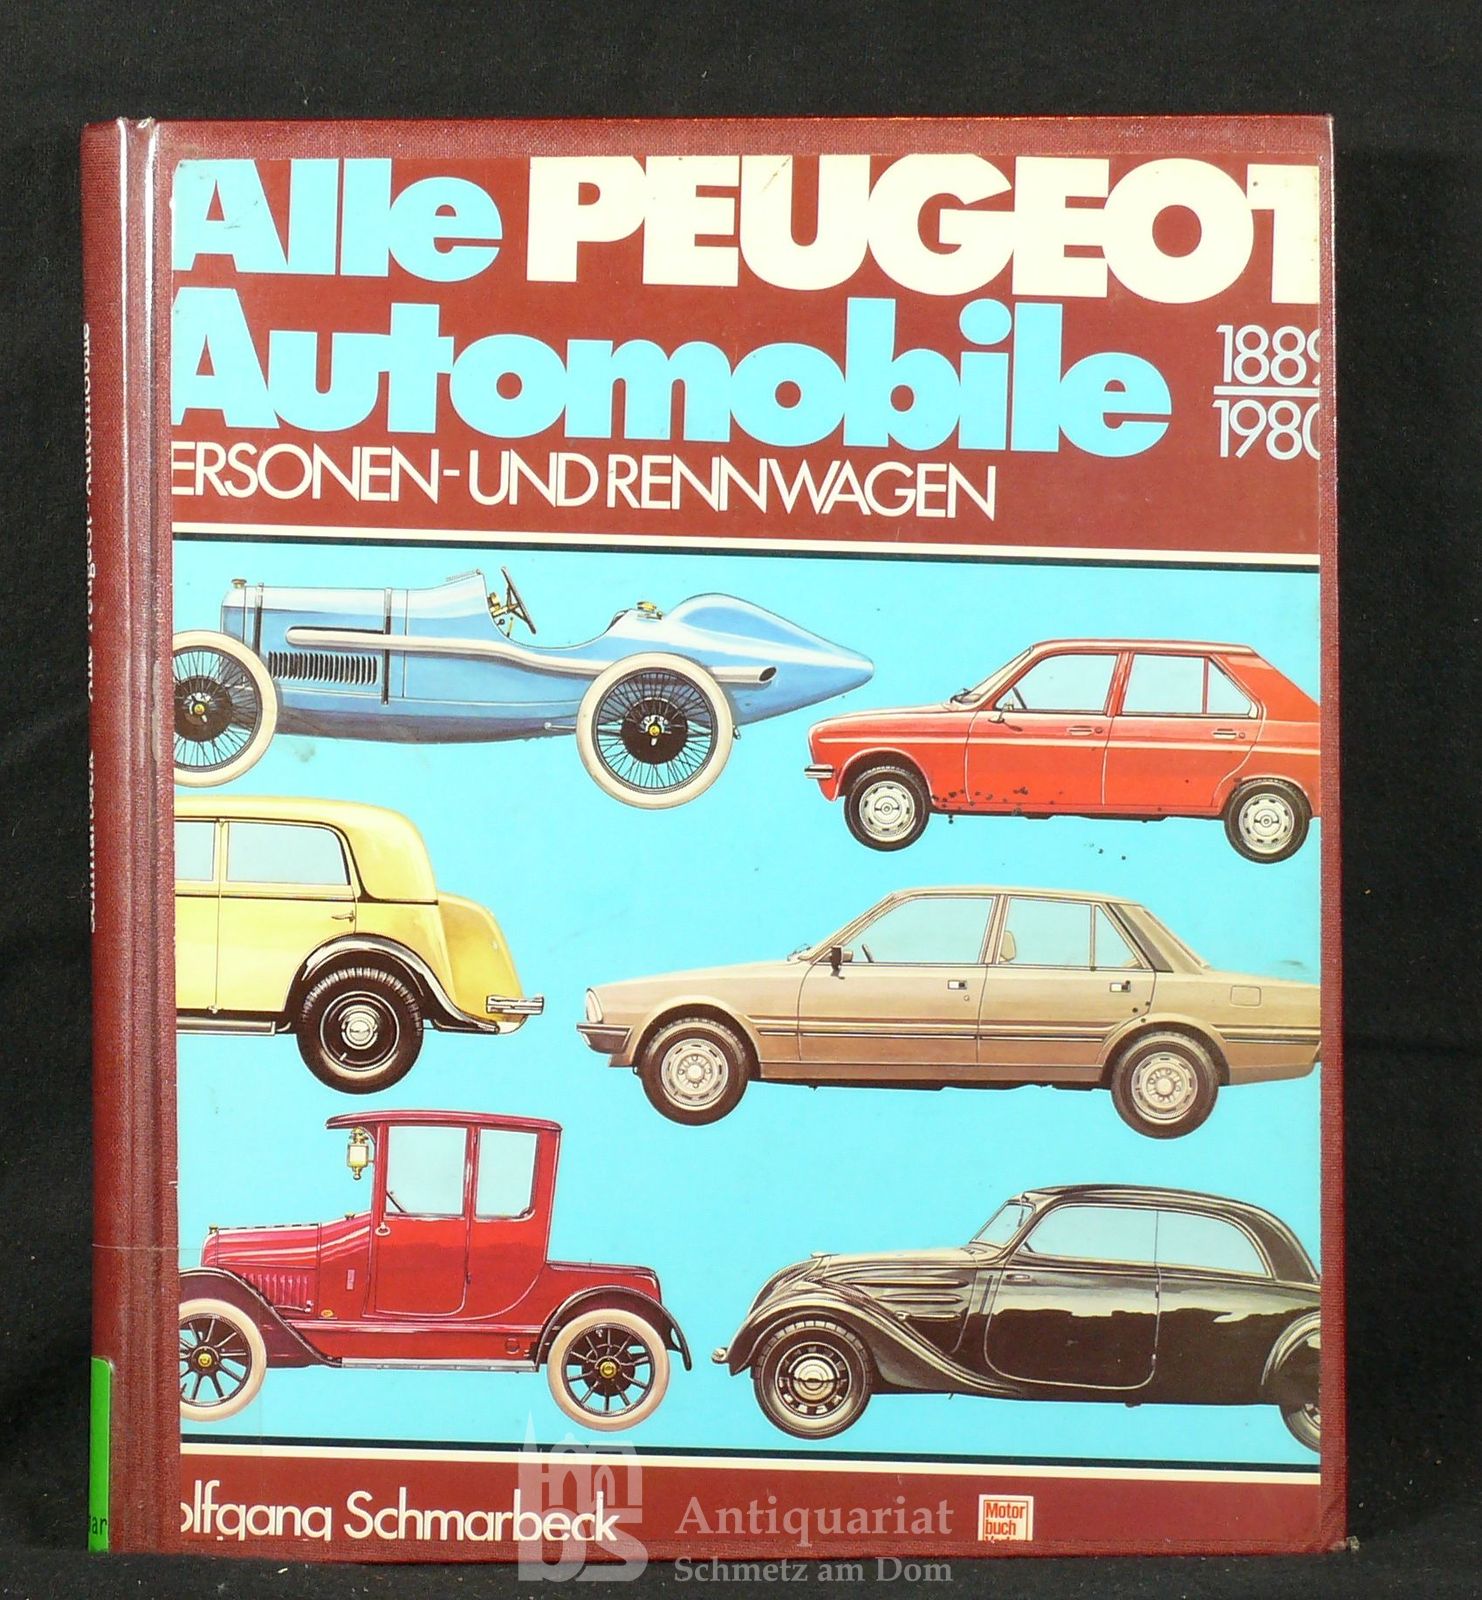 Alle Peugeot-Automobile. 1890-1990. Personen- und Rennwagen. - Schmarbeck, Wolfgang.